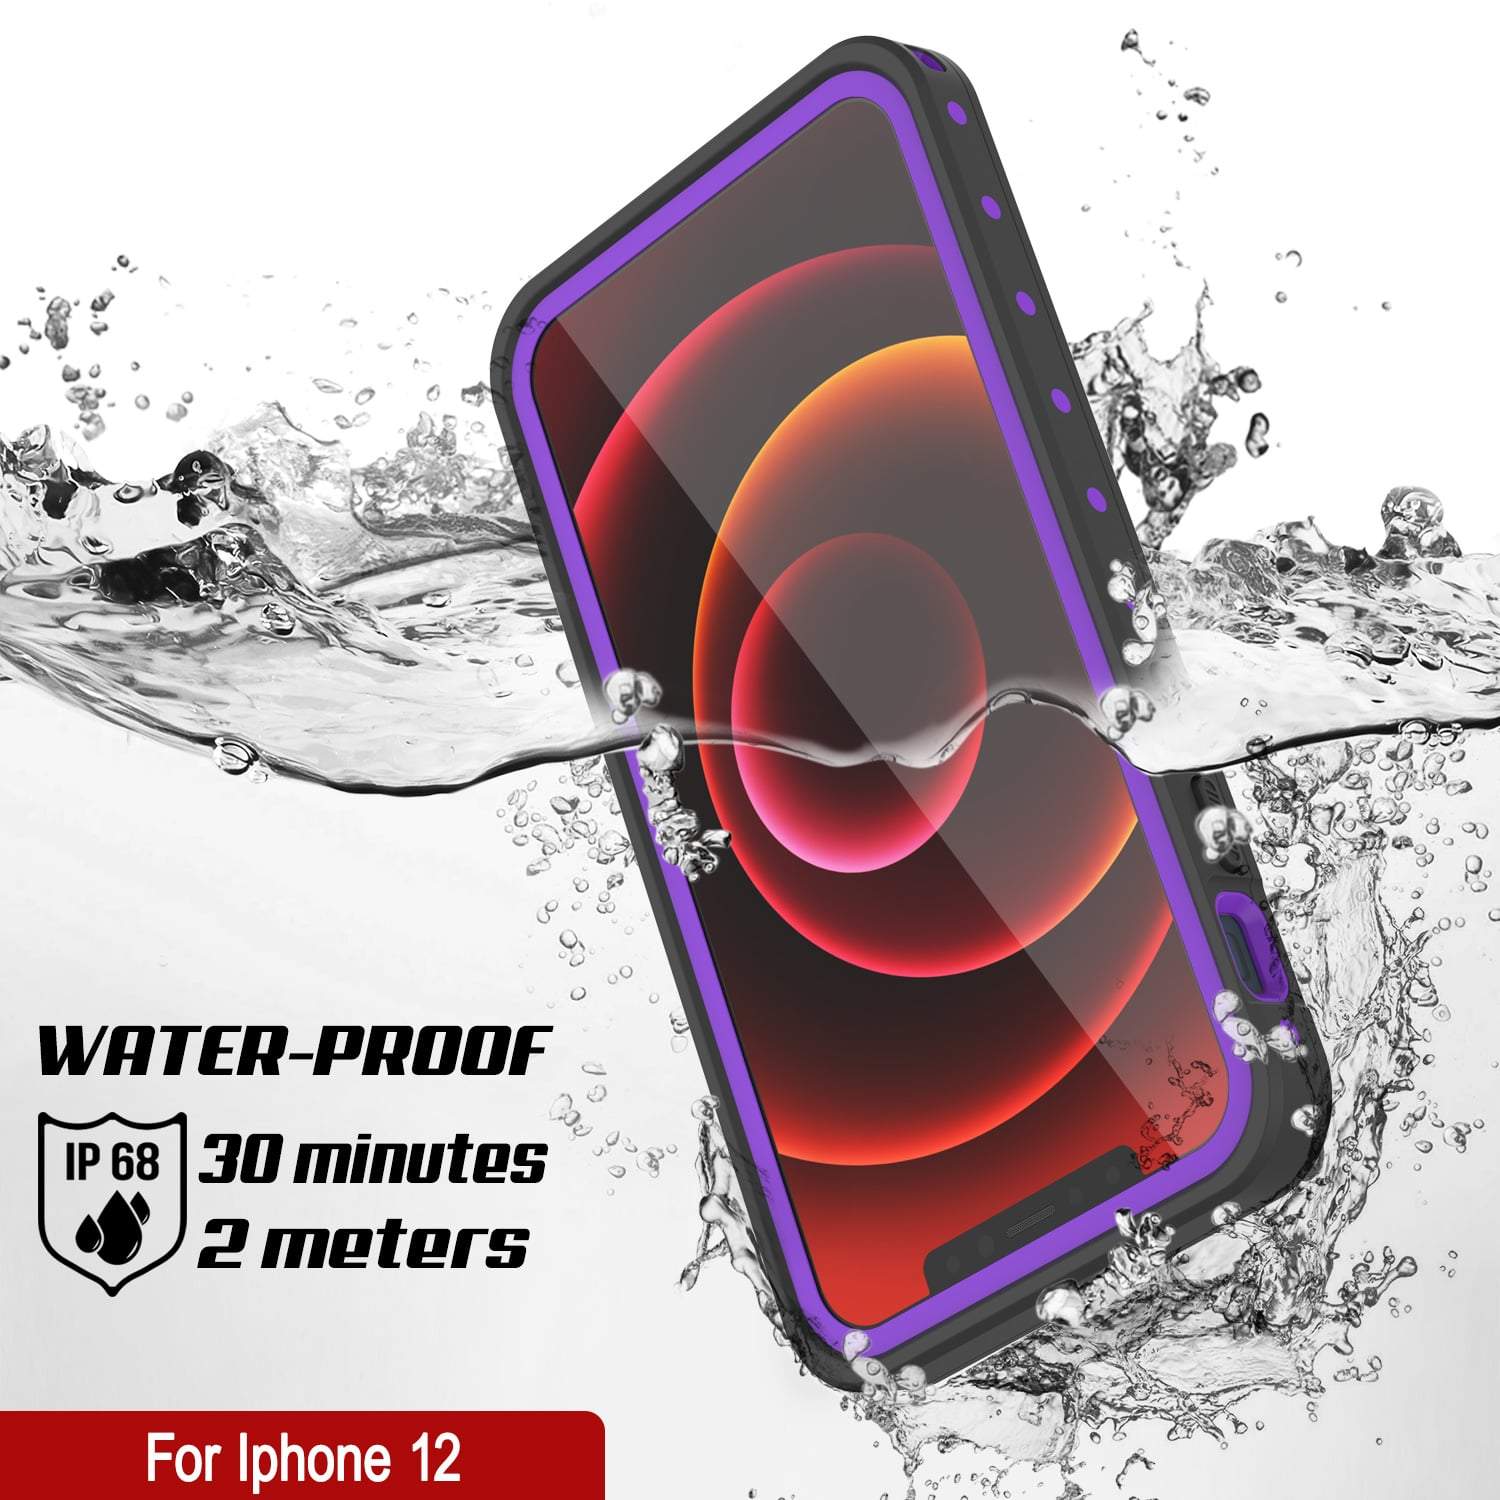 iPhone 12 Waterproof IP68 Case, Punkcase [Purple] [StudStar Series] [Slim Fit] [Dirtproof]